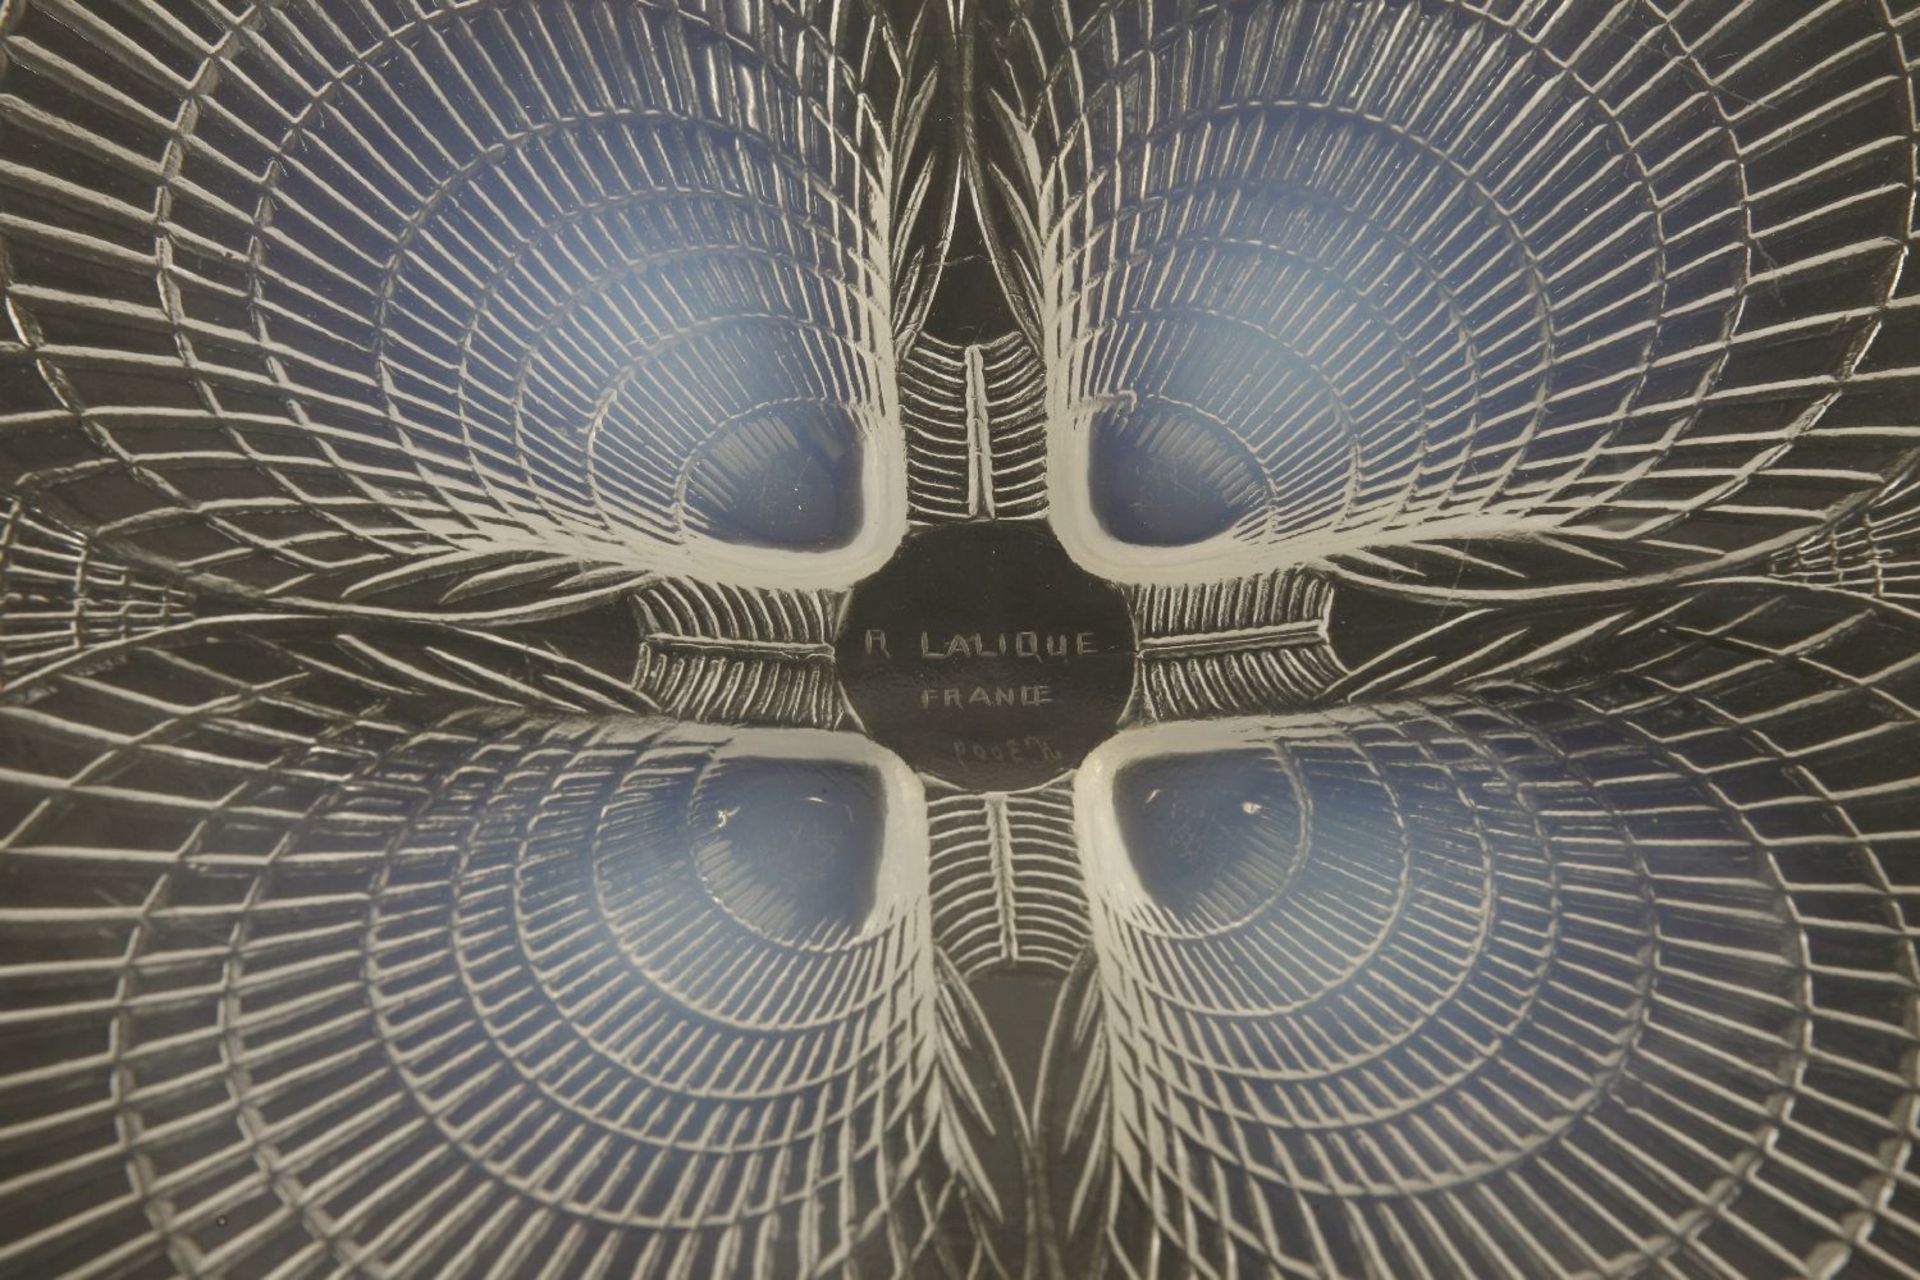 A Lalique 'Coquilles' opalescent glass dish,wheel cut 'R Lalique France, No 3009',29.5cm diameter - Bild 2 aus 2